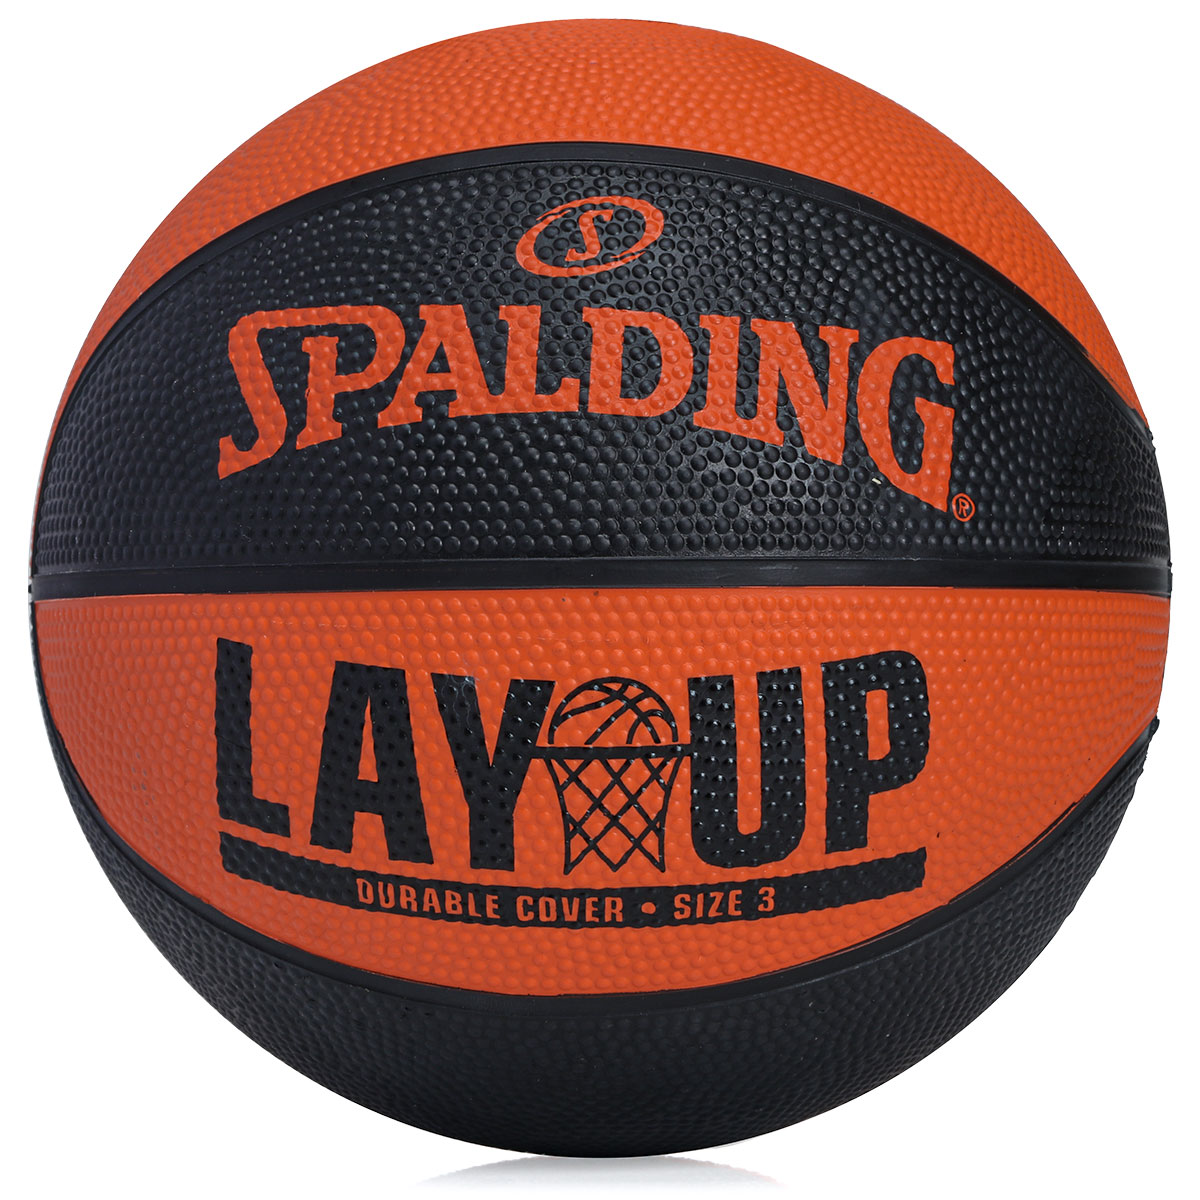 Bola de Basquete Spalding NBA TF 150 Performance